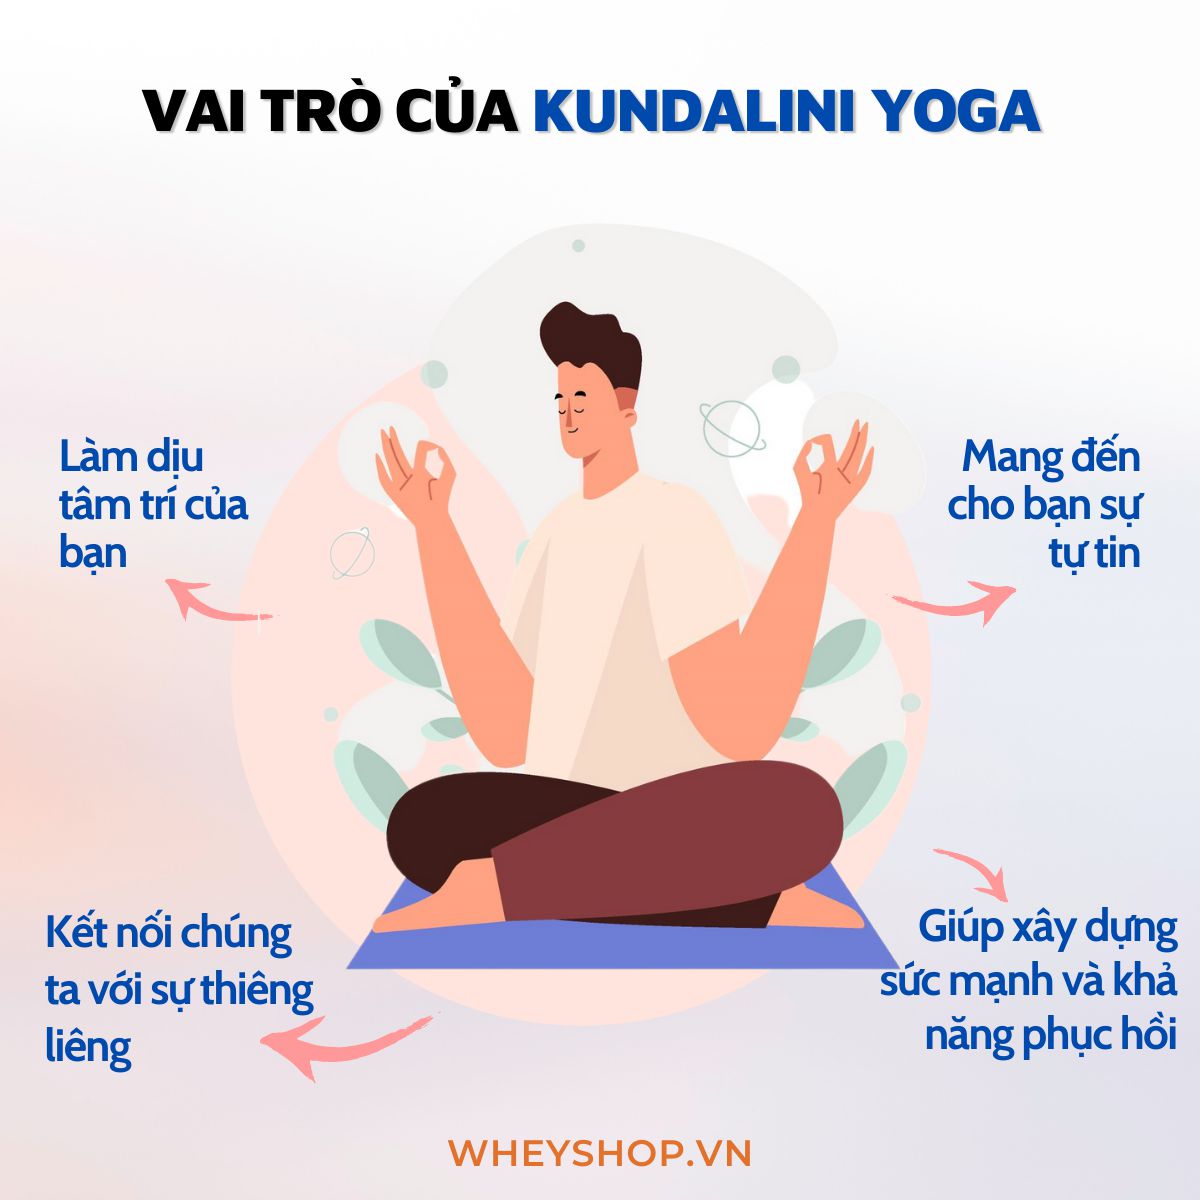 Kundalini Yoga là gì? Đây là một trường phái yoga tập trung vào sức khỏe tinh thần với mục đích đánh thức trí tuệ và nguồn năng lượng từ bên trong mỗi người...